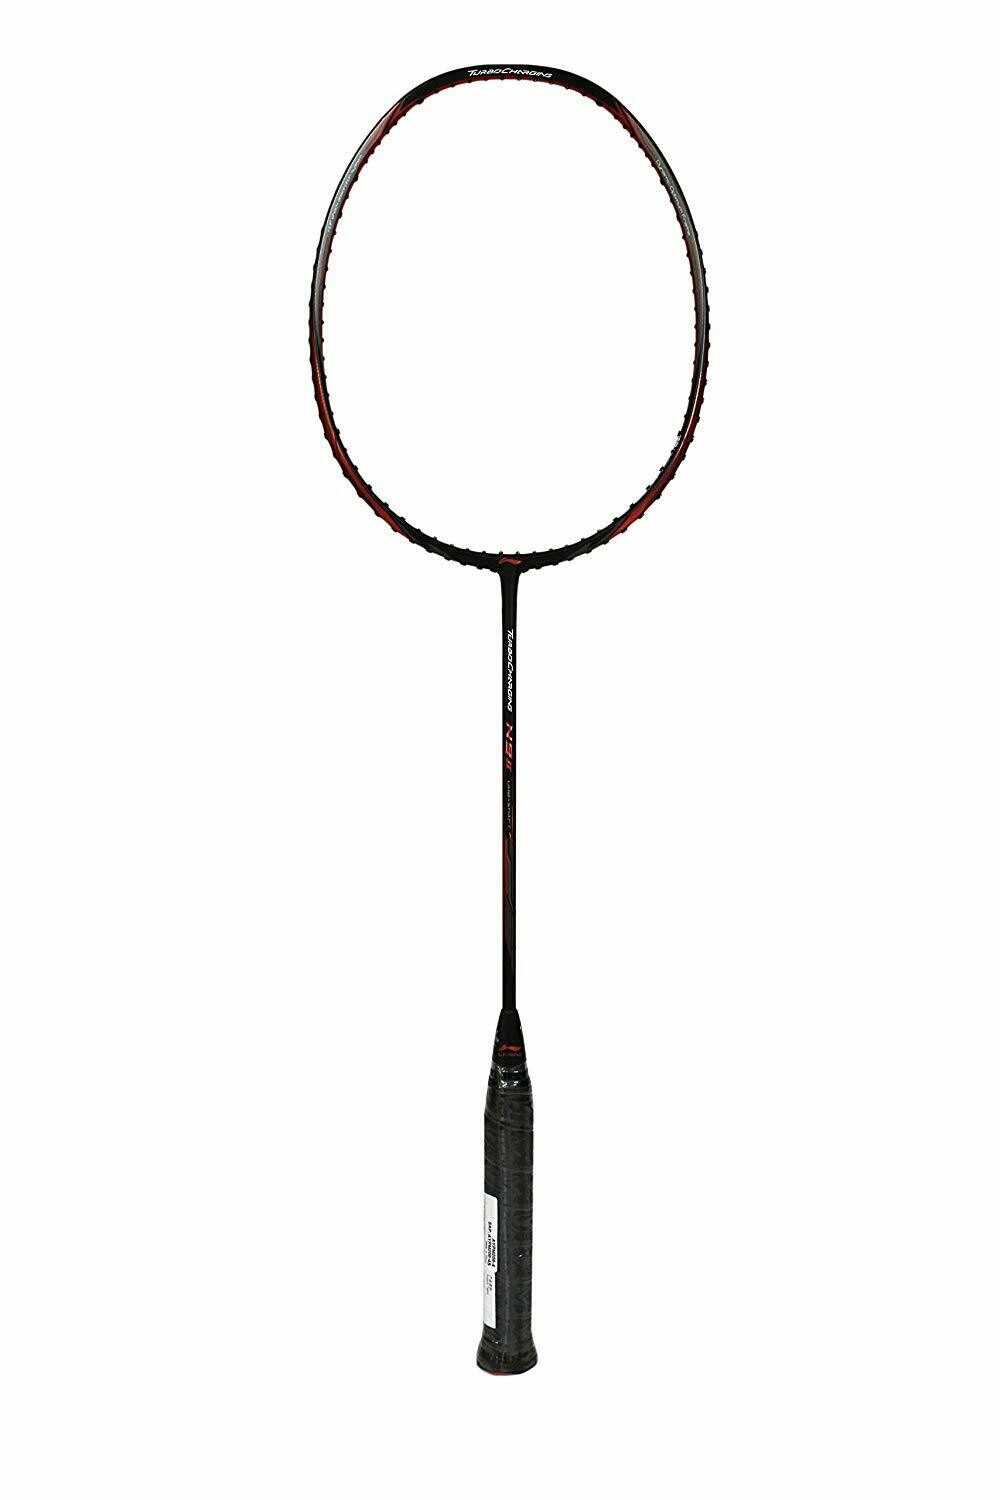 LI-NING N-9 II TonTowi Signature Carbon-Fiber Badminton Racquet (Black/Copper)